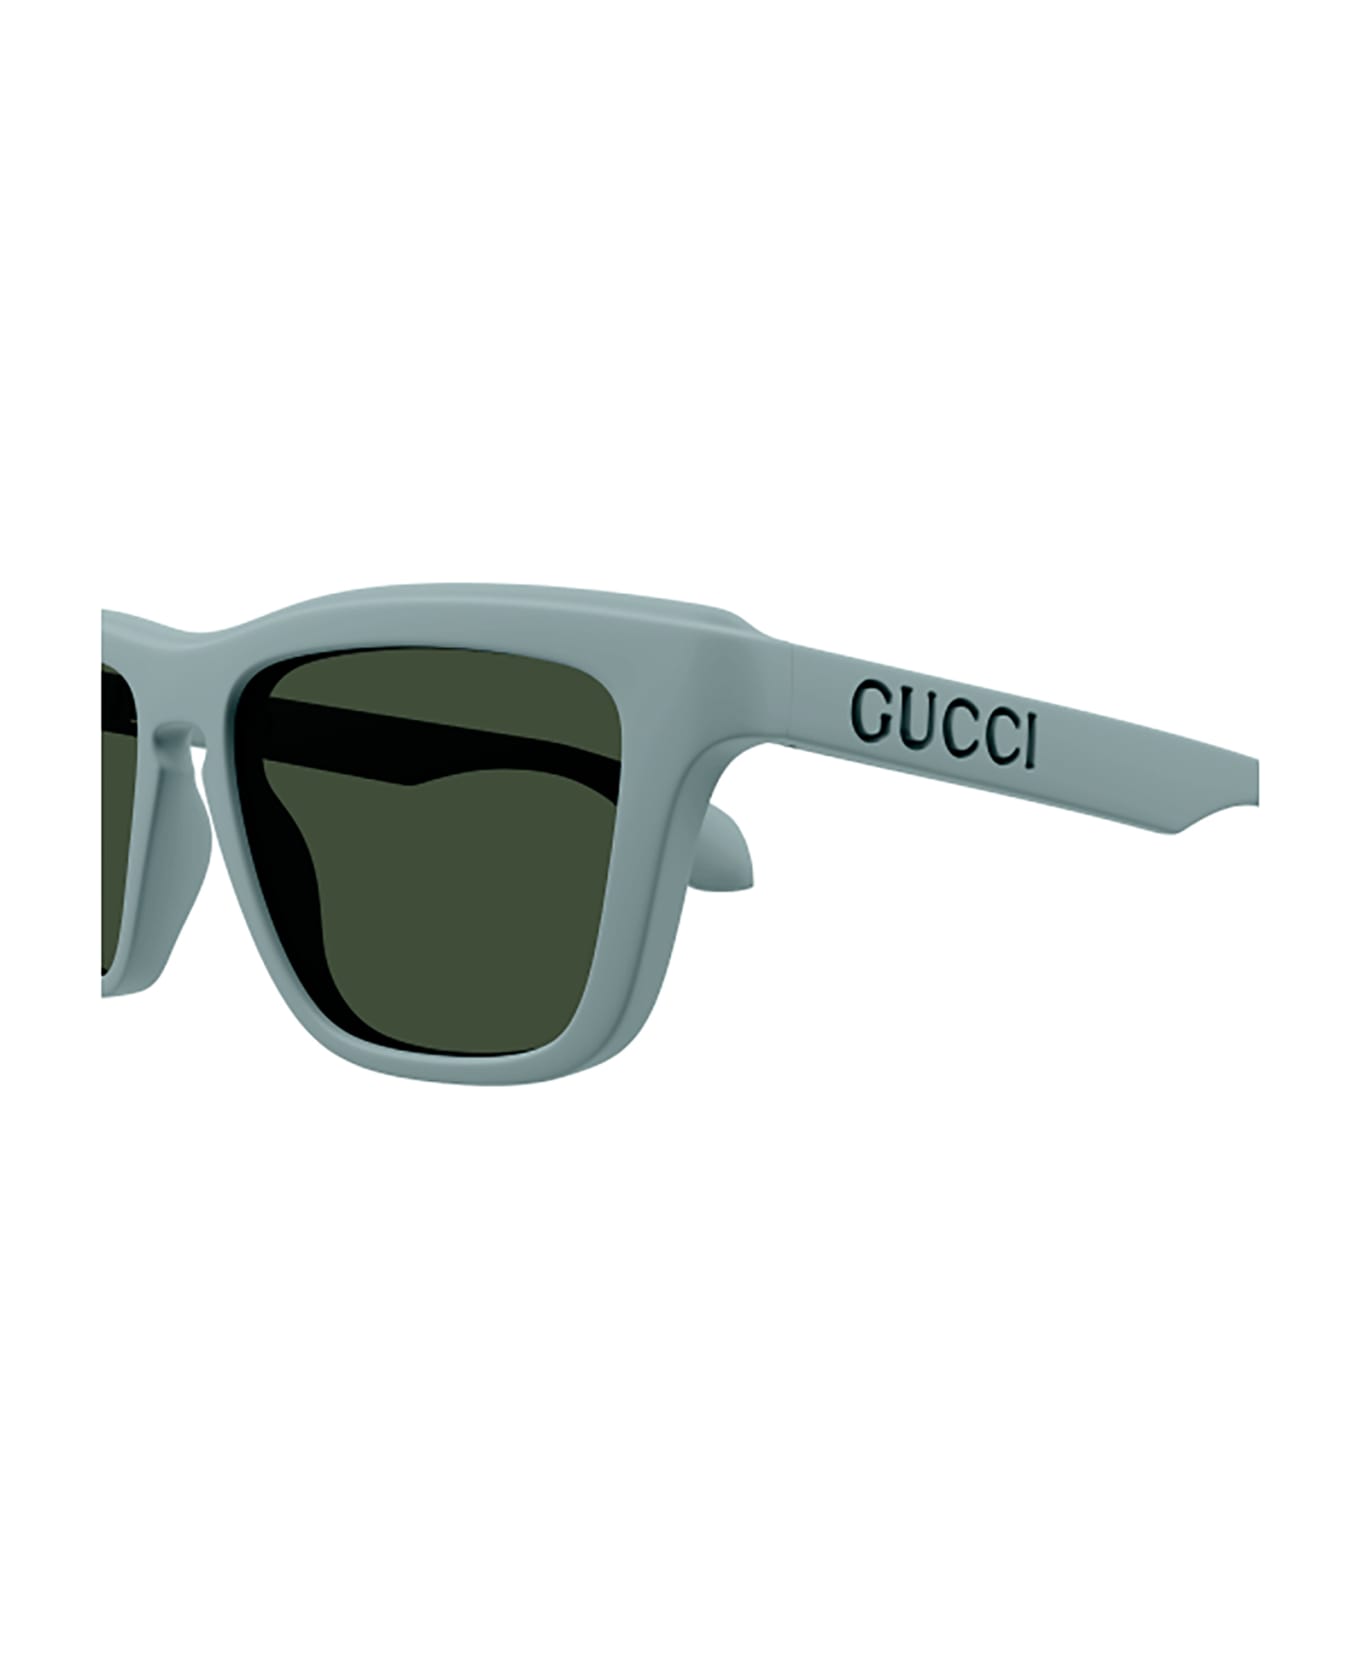 Gucci Eyewear GG1571S Sunglasses - Light Blue Light Blue